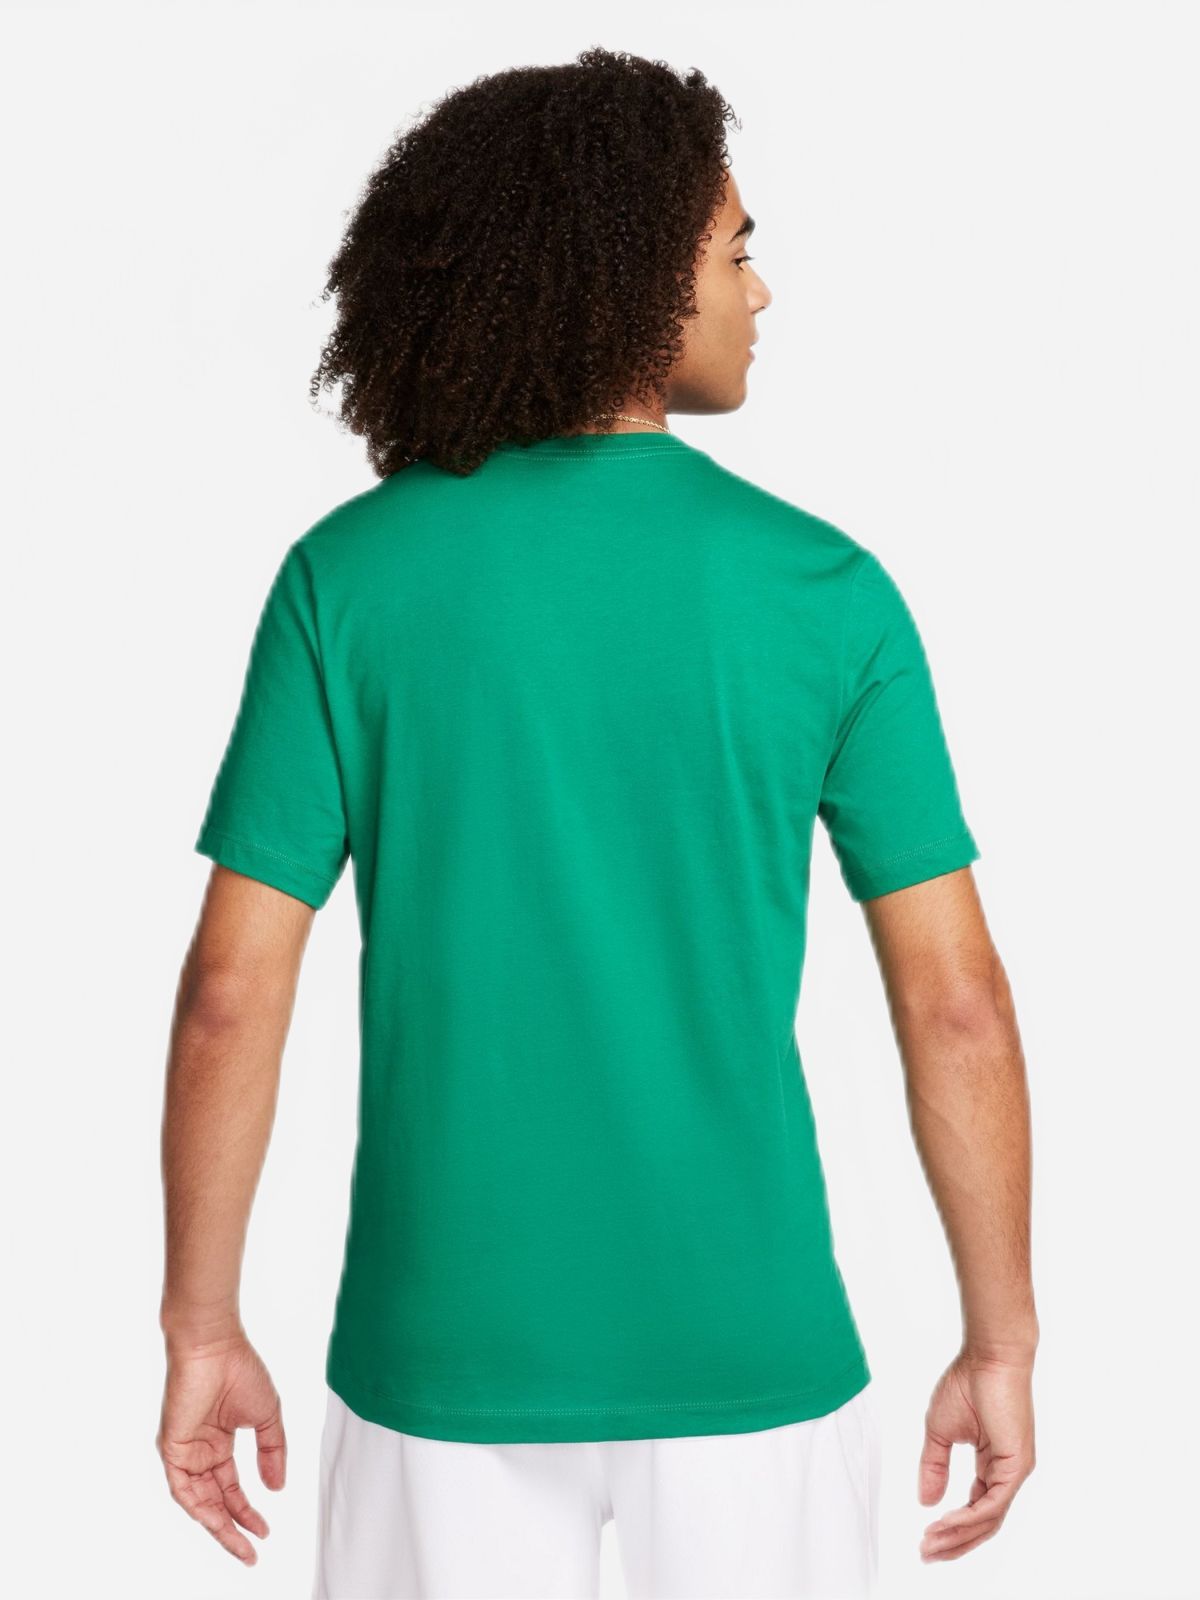  חולצת טישרט עם הדפס לוגו של NIKE